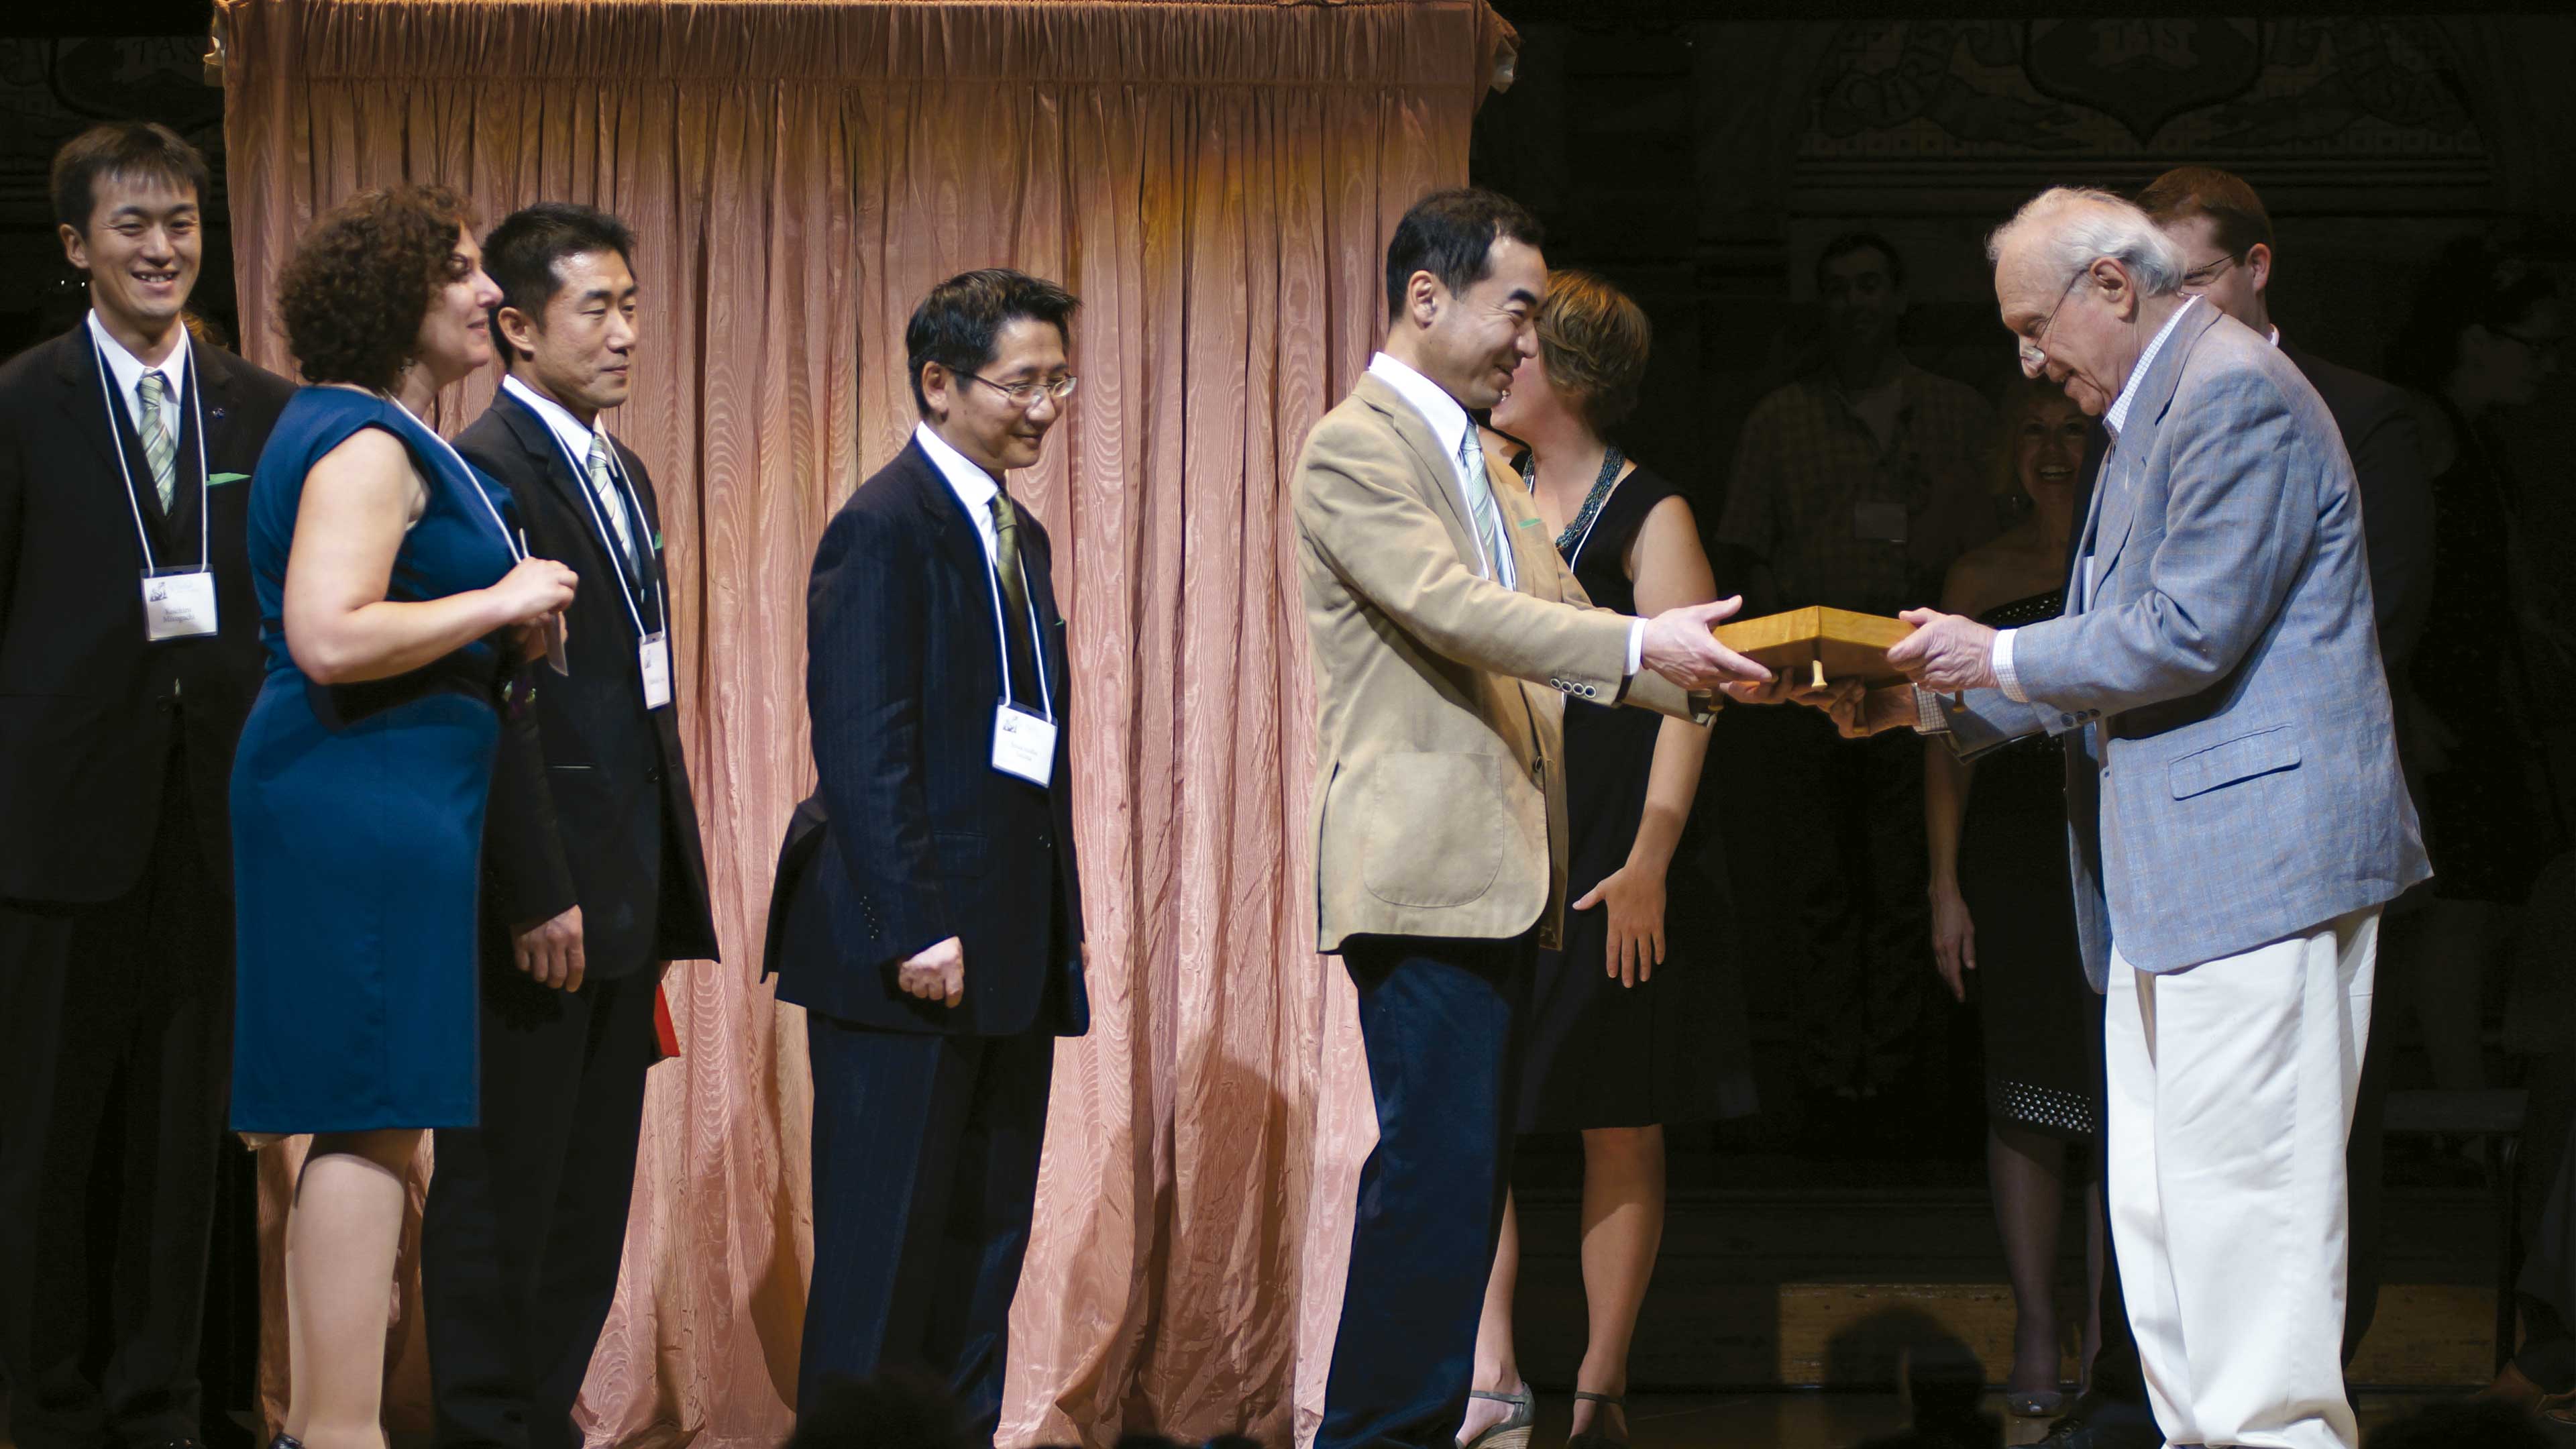 Los esperados premios Ig Nobel 2011